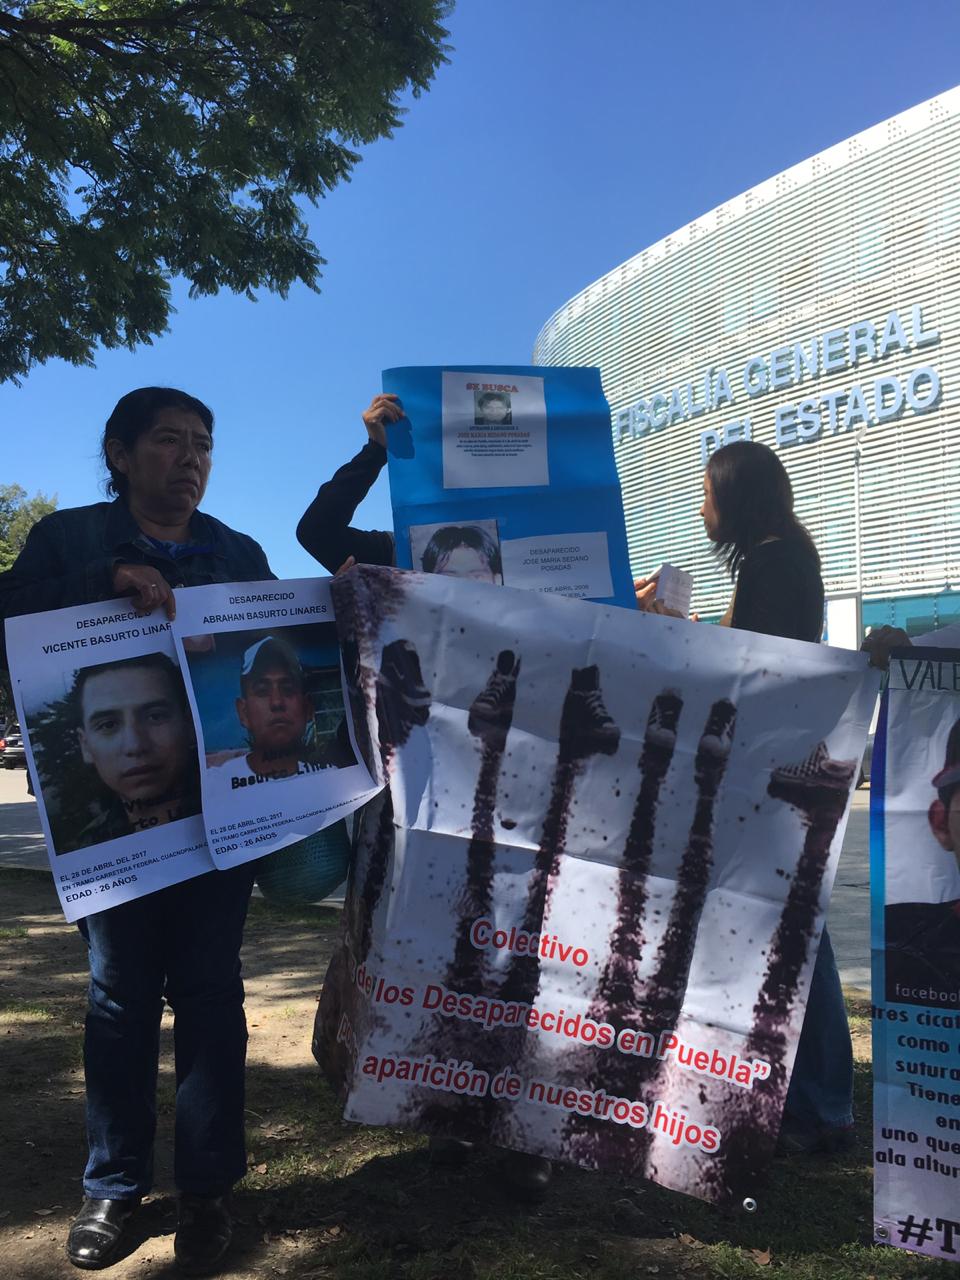 La Voz de los desaparecidos en Puebla